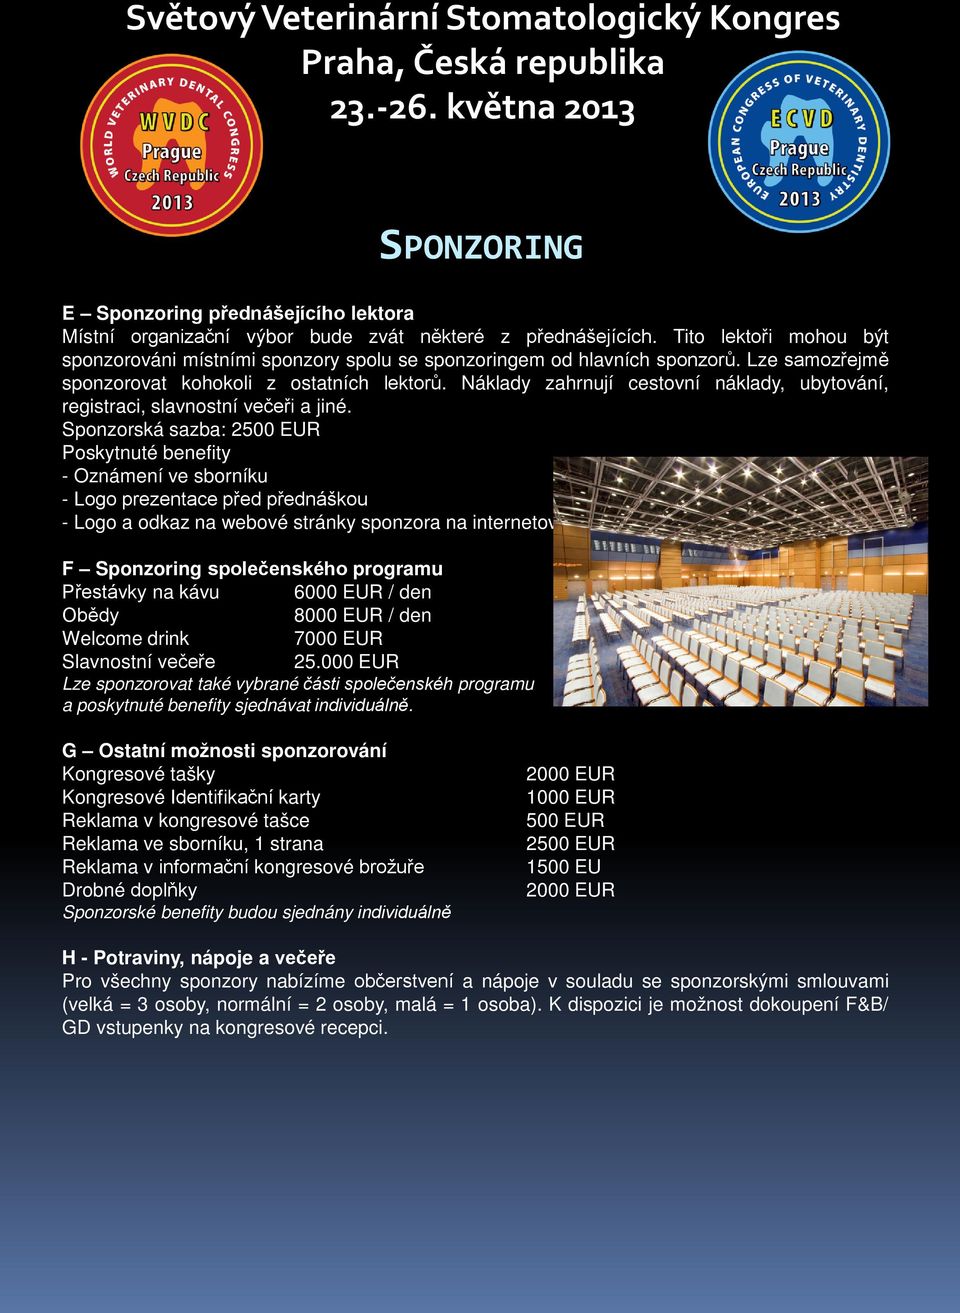 Sponzorská sazba: 2500 EUR Poskytnuté benefity - Oznámení ve sborníku - Logo prezentace před přednáškou - Logo a odkaz na webové stránky sponzora na internetových stránkách kongresu F Sponzoring